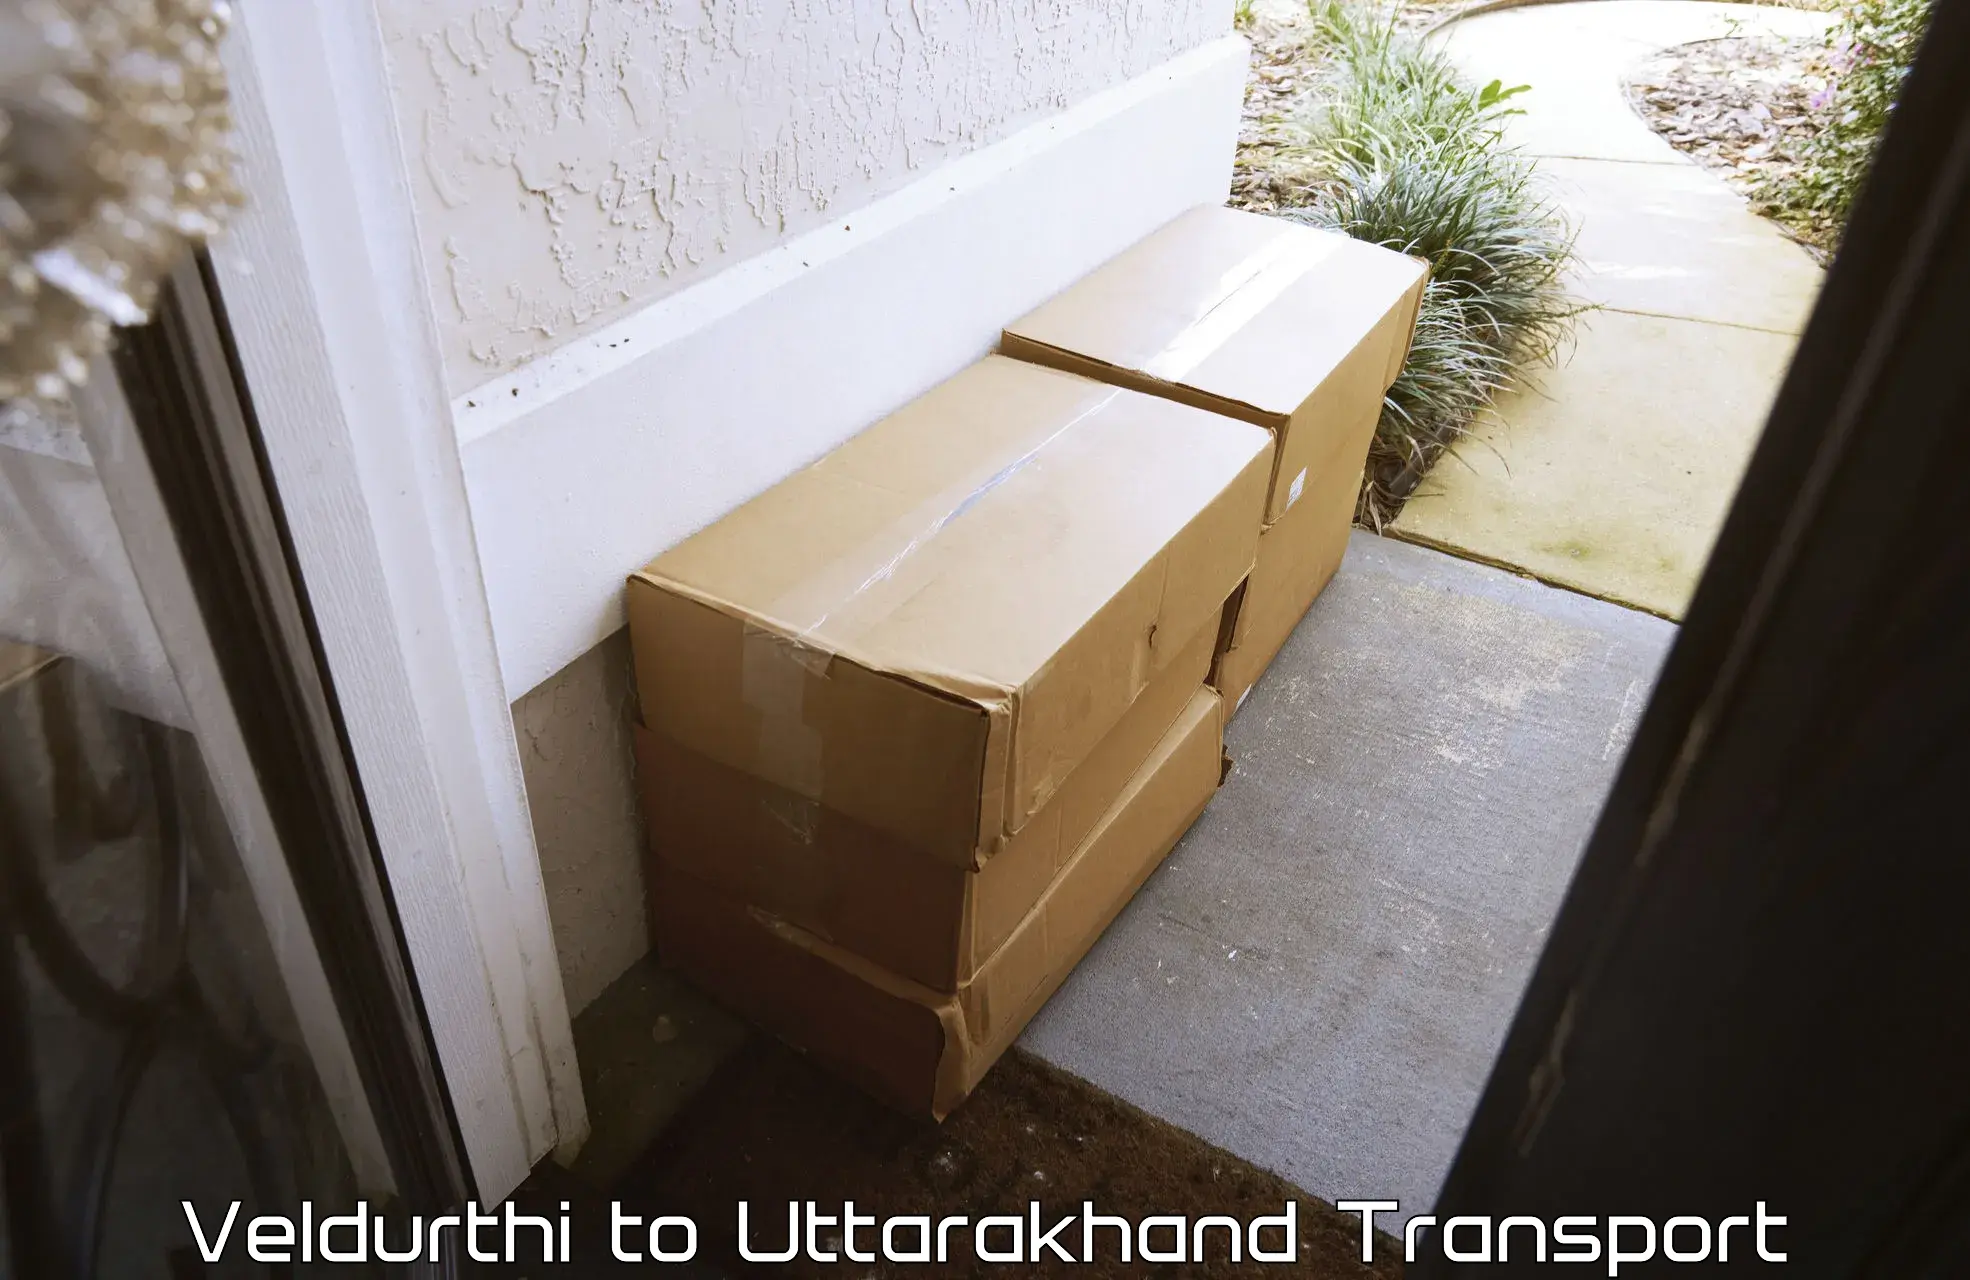 Cargo transportation services Veldurthi to Uttarakhand